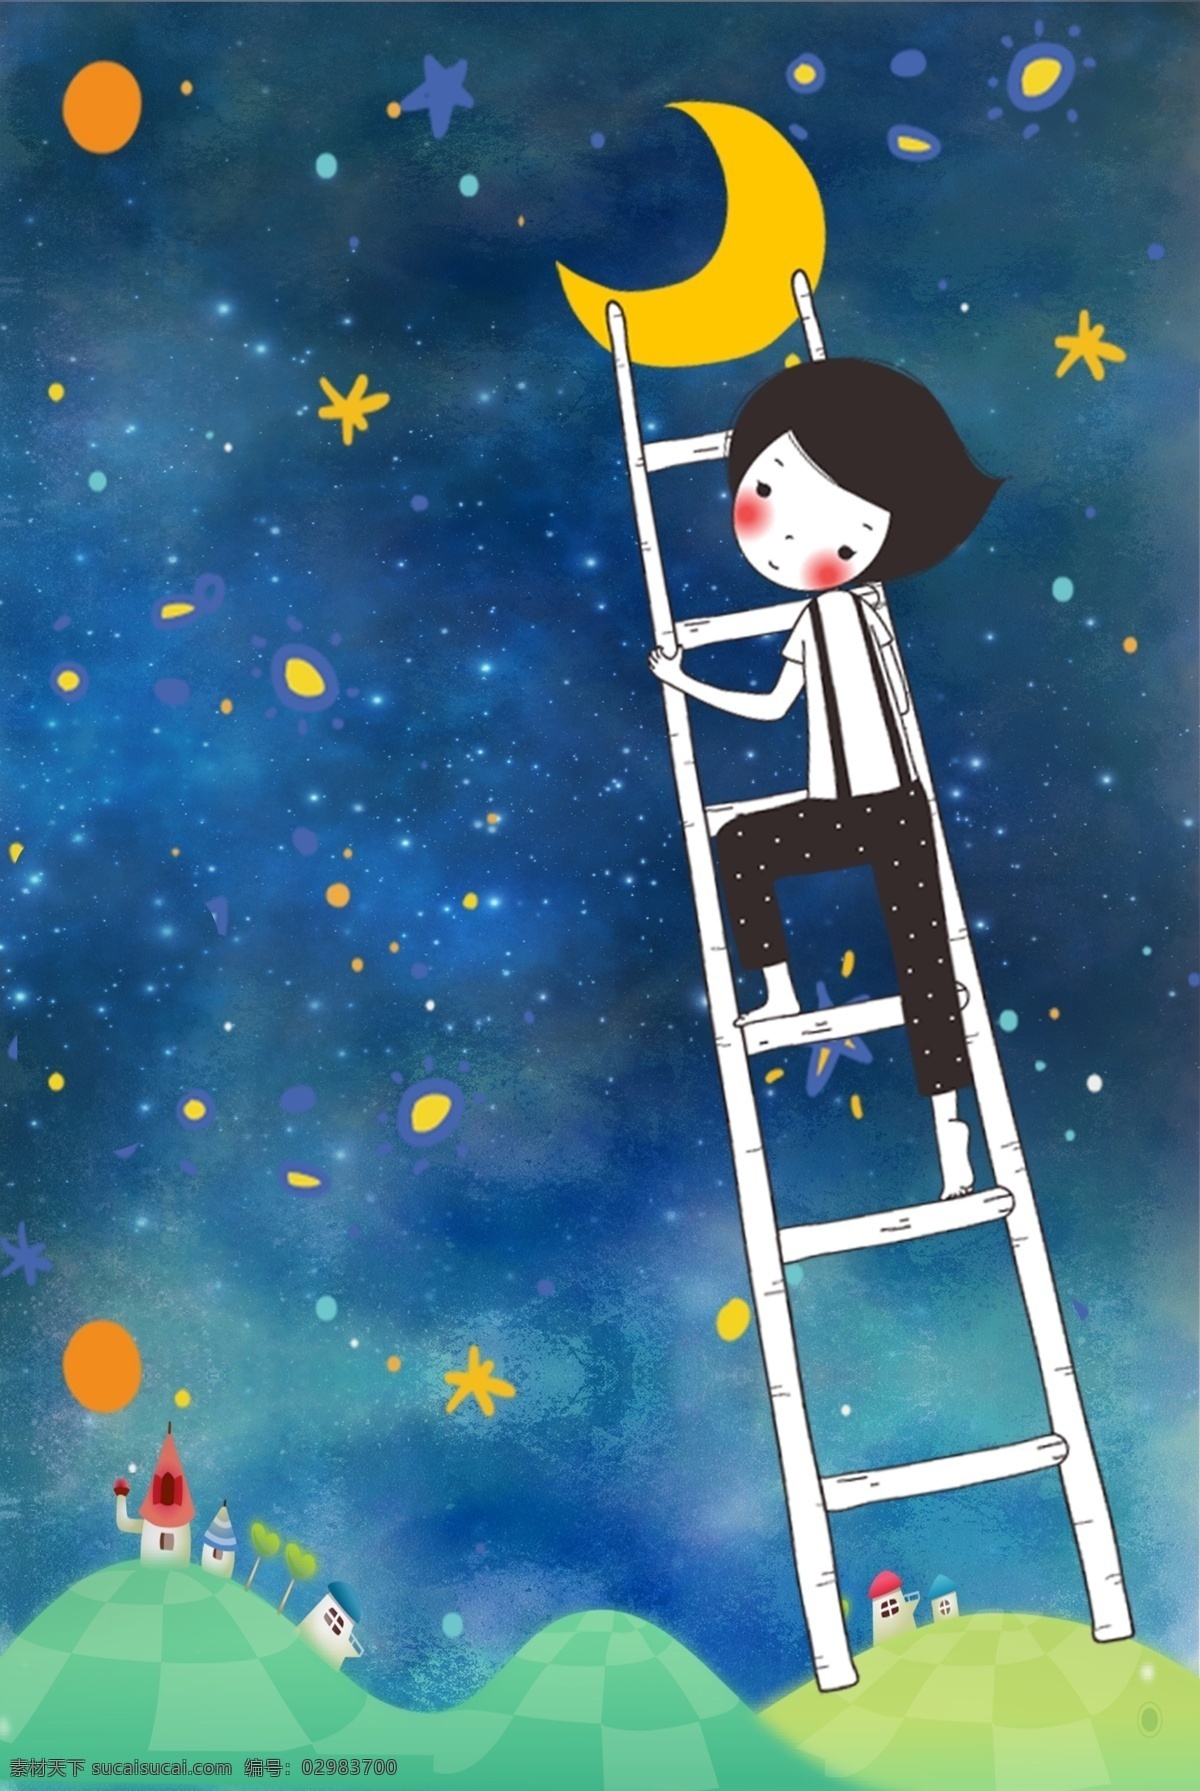 仲夏夜之梦 摘 月亮 女孩 梦想 卡通 清新 星星 星空 爬梯子的少女 夏夜